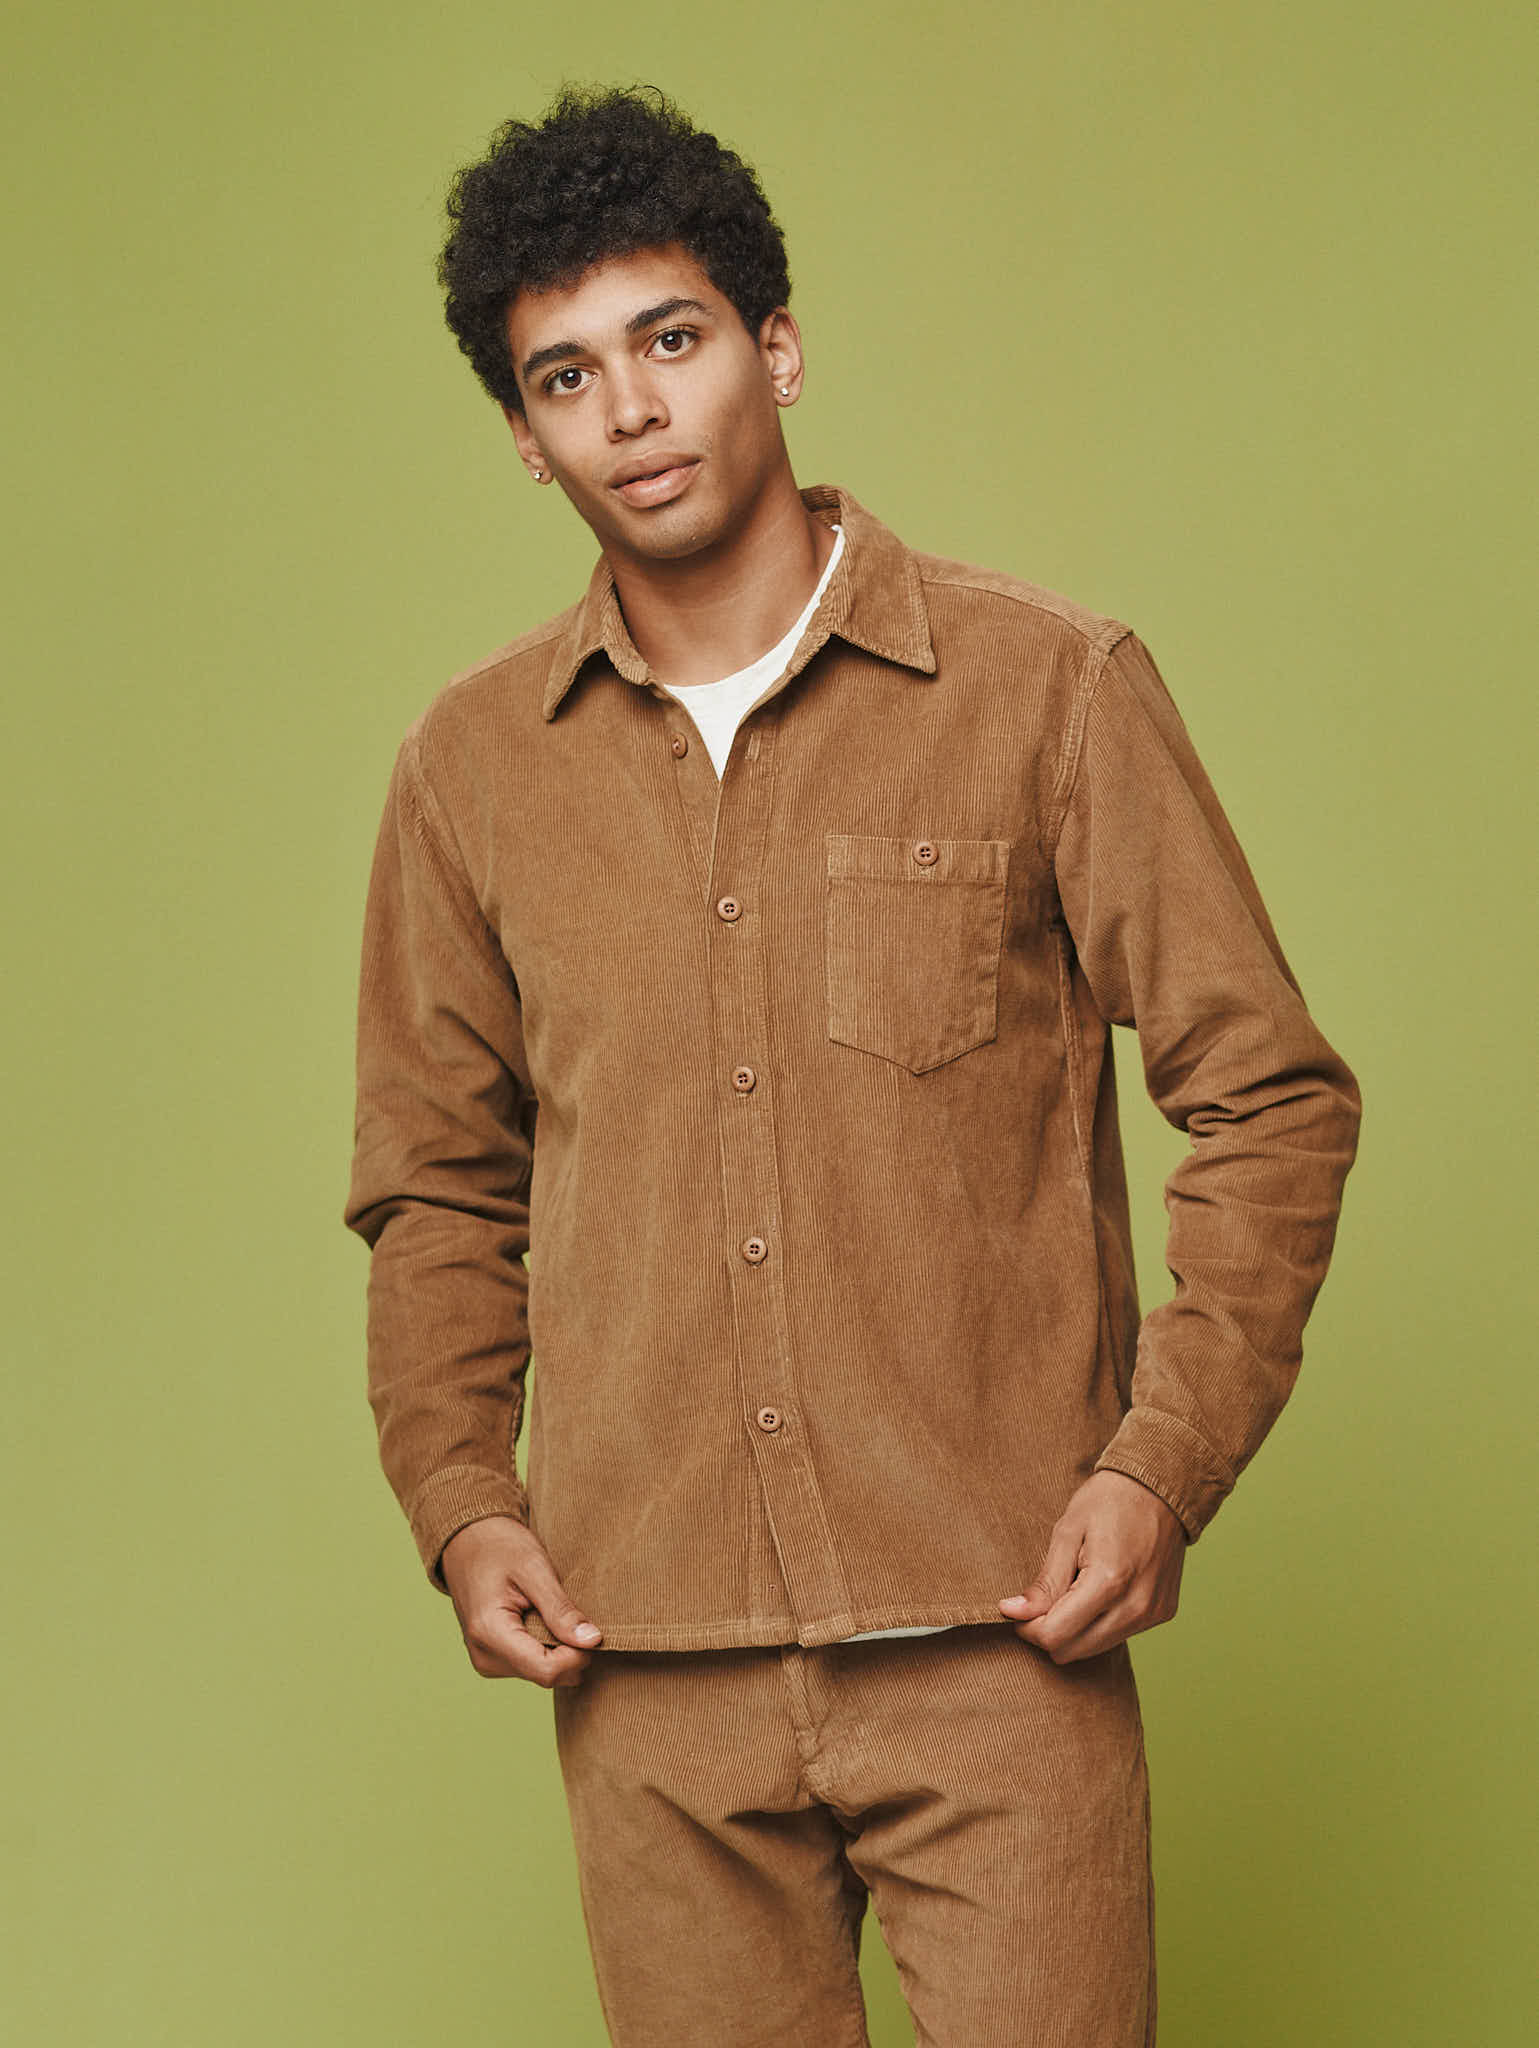 Oxnard Shirt Jacket | Jungmaven Hemp Clothing & Accessories